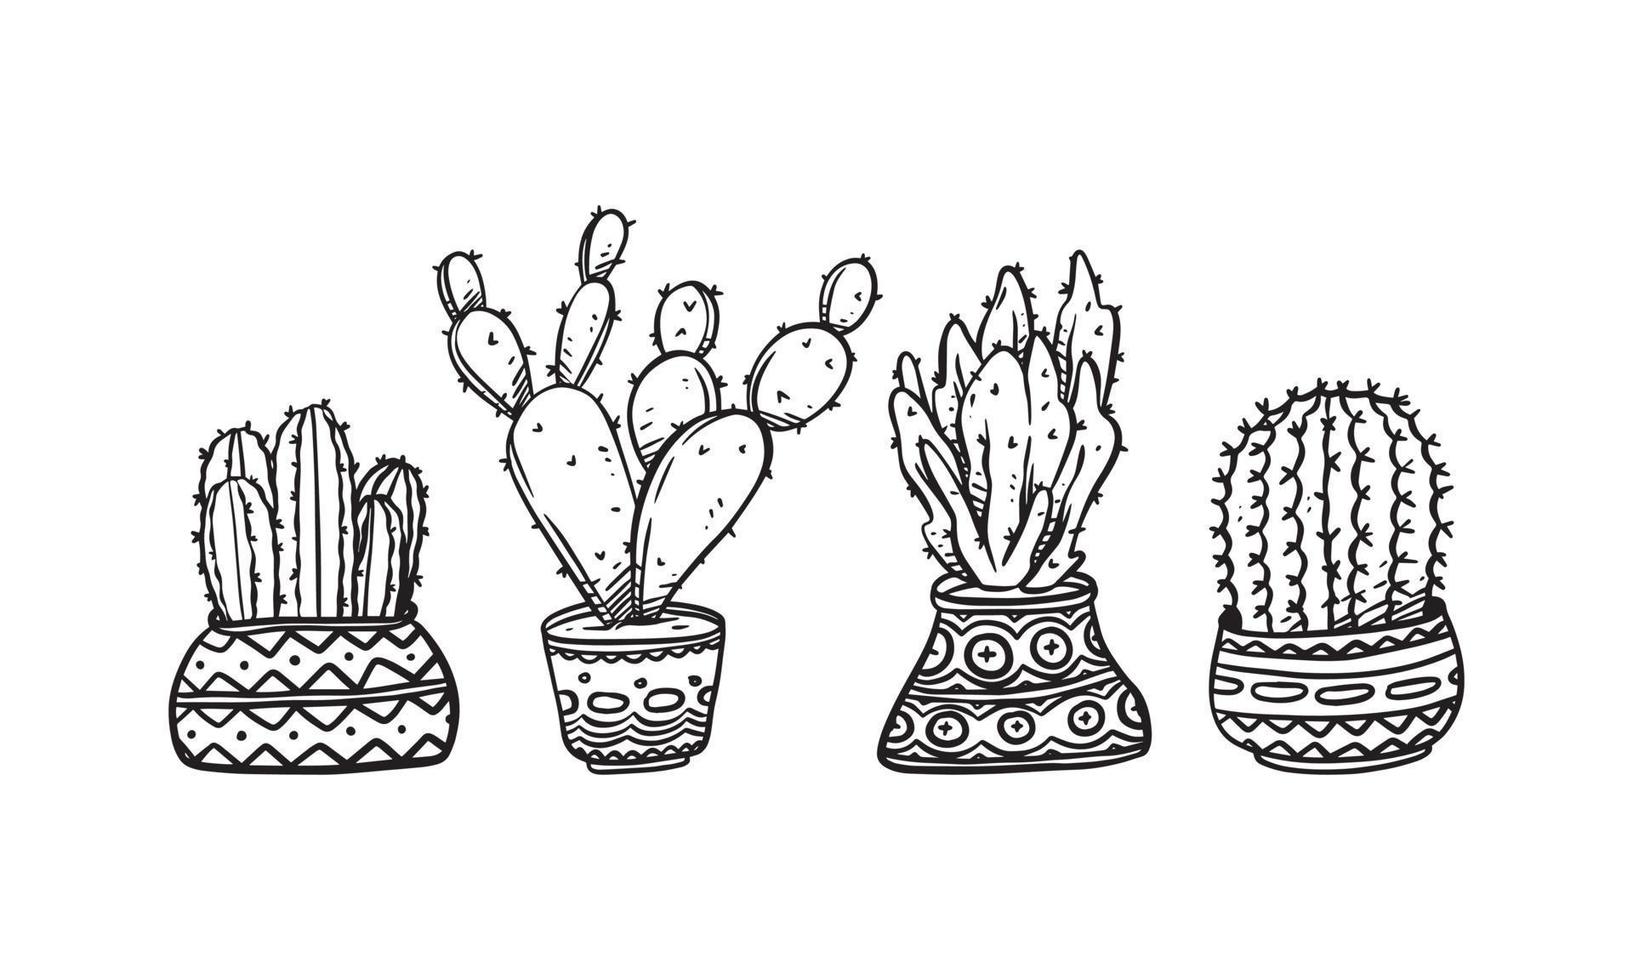 Conjunto de ilustración de vector dibujado a mano de planta en maceta, elementos gráficos aislados de plantas para el diseño, ilustración de planta de cactus para crear un diseño romántico o vintage